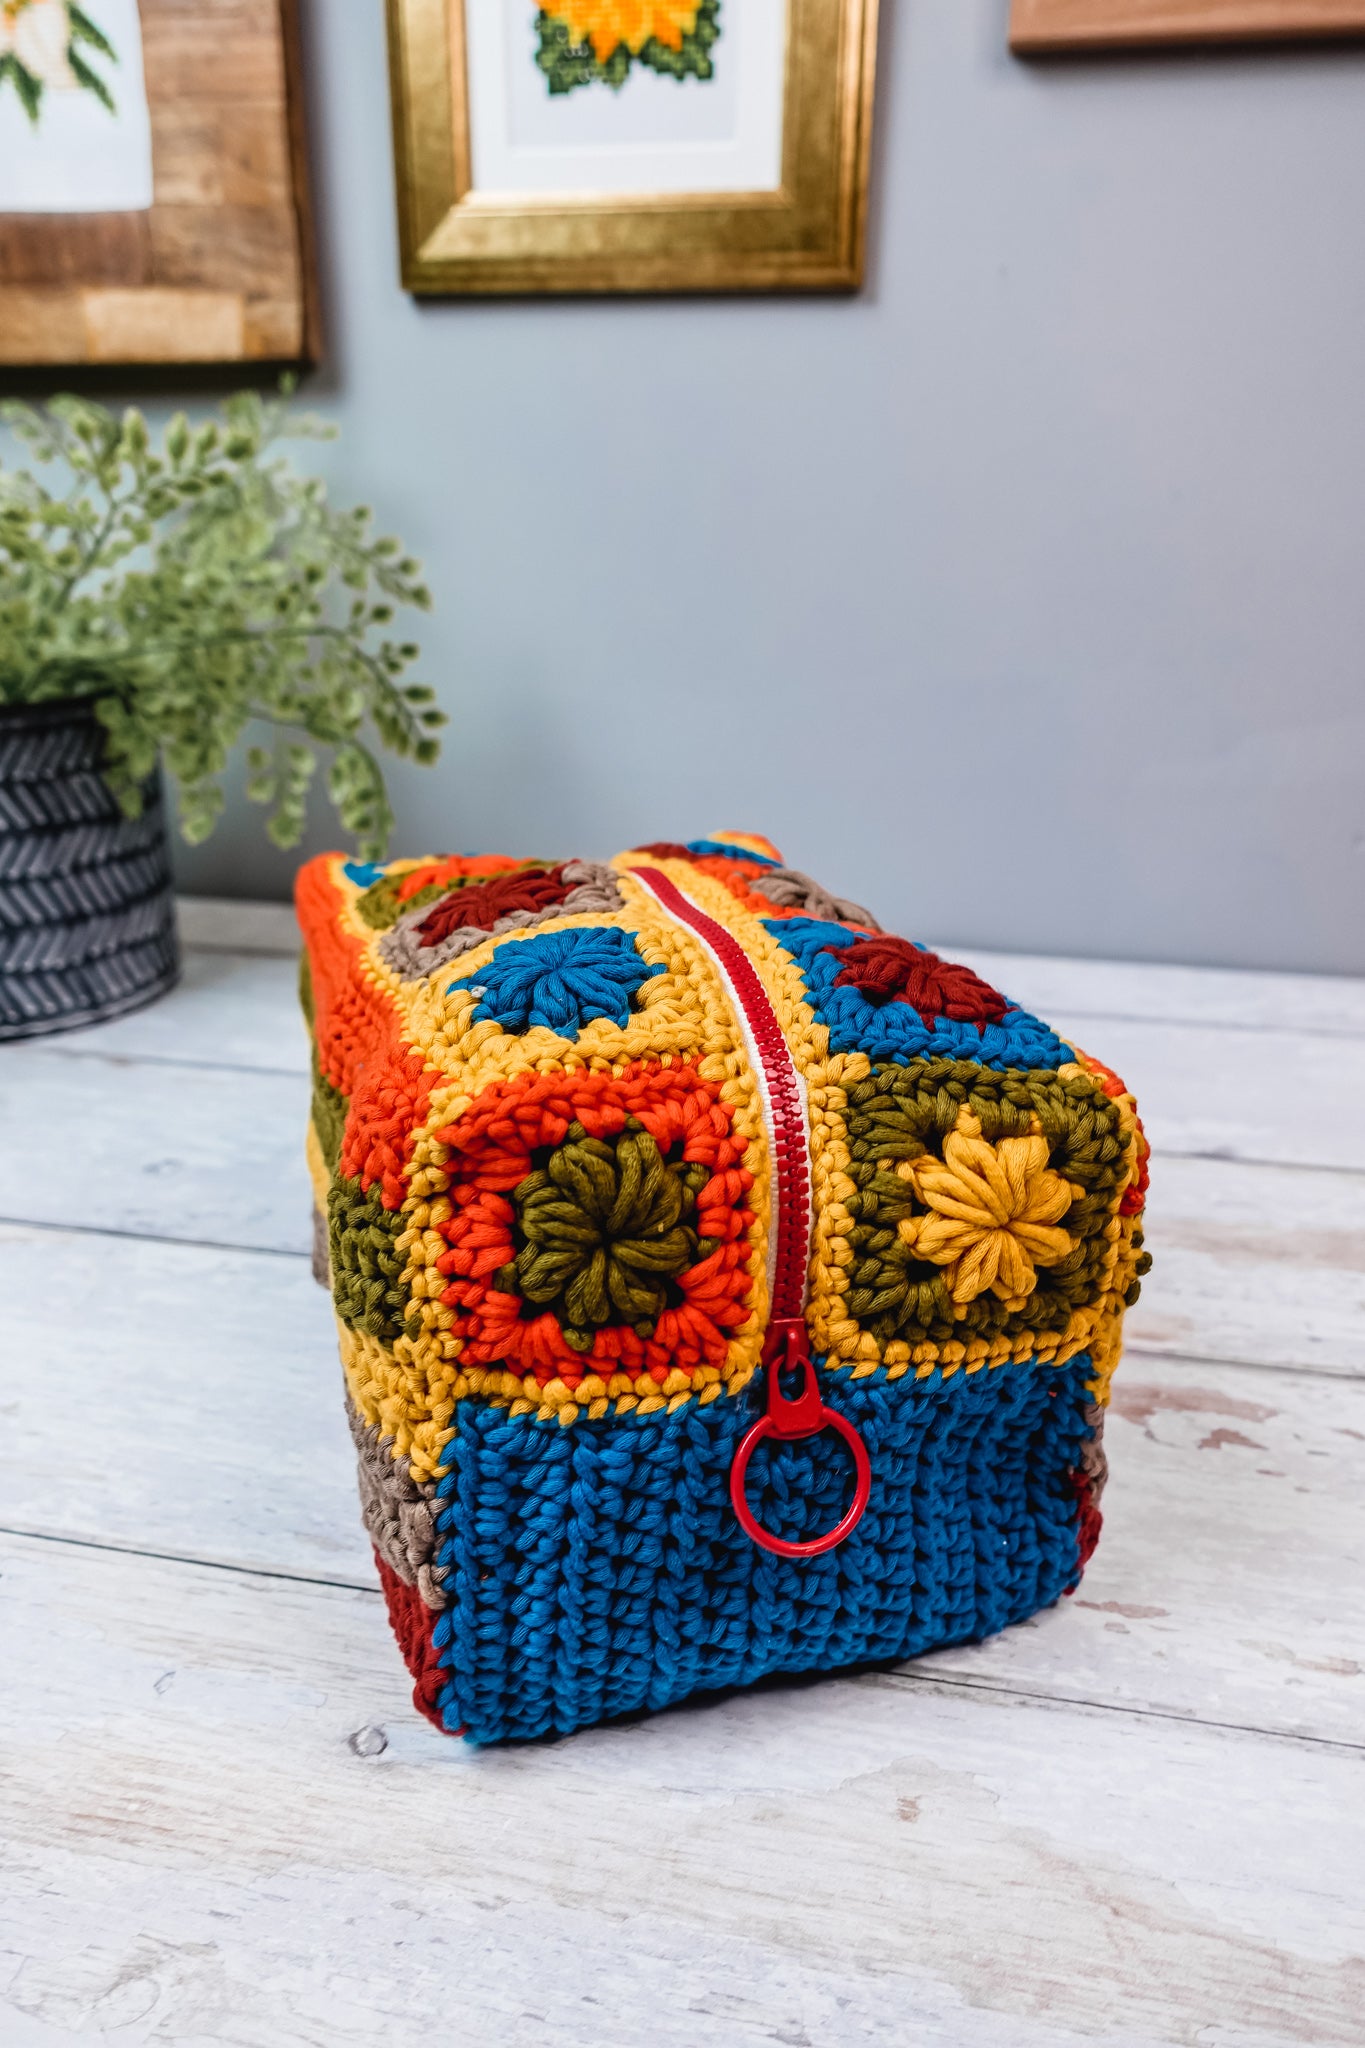 Crochet Makeup Bag WRITTEN PATTERN, Crochet Bag Written Pattern, Crochet Bag, Auburn Crochet Makeup Bag, Brunaticality